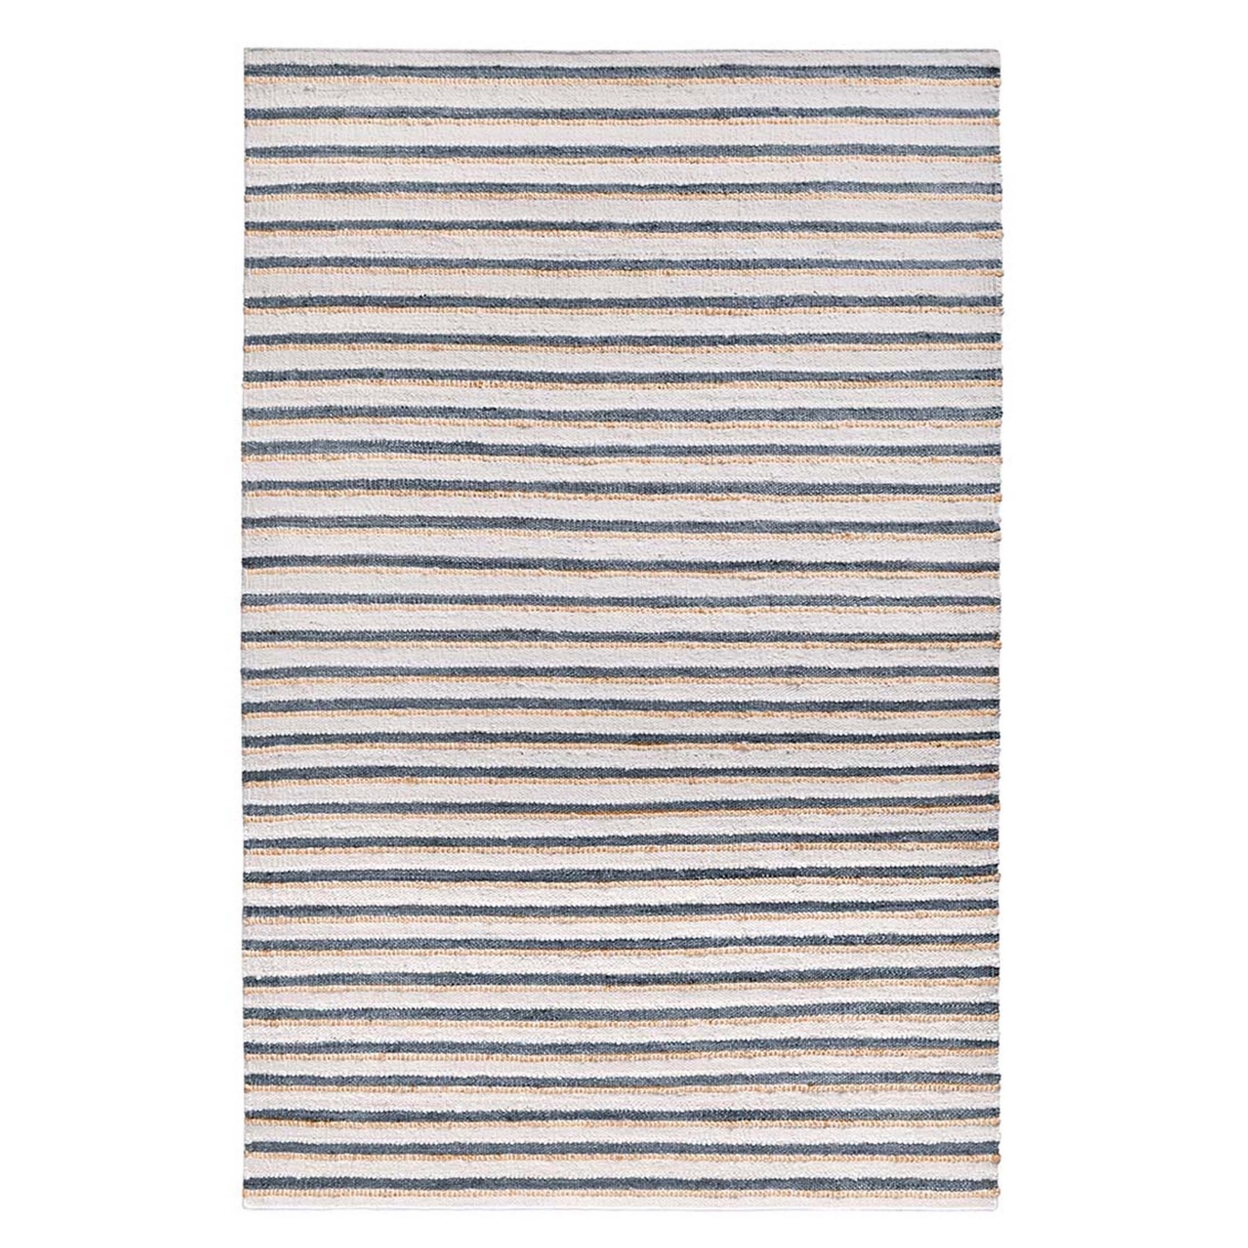 Azu 5 X 8 Handmade Medium Area Rug, Classic Stripes, Ivory, Aqua Blue- Saltoro Sherpi